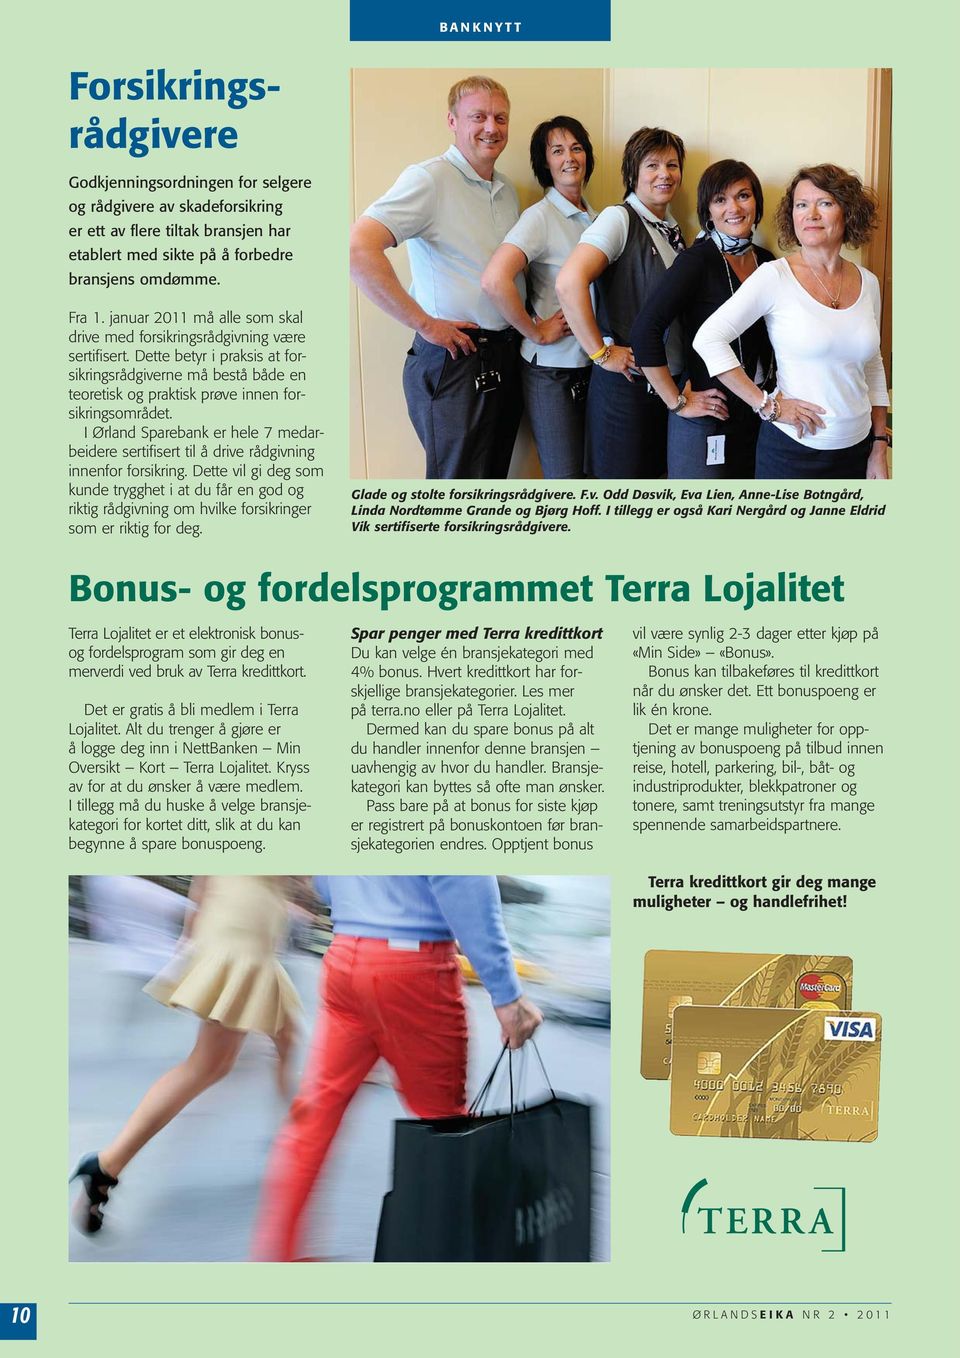 I Ørland Sparebank er hele 7 medarbeidere sertifisert til å drive rådgivning innenfor forsikring.